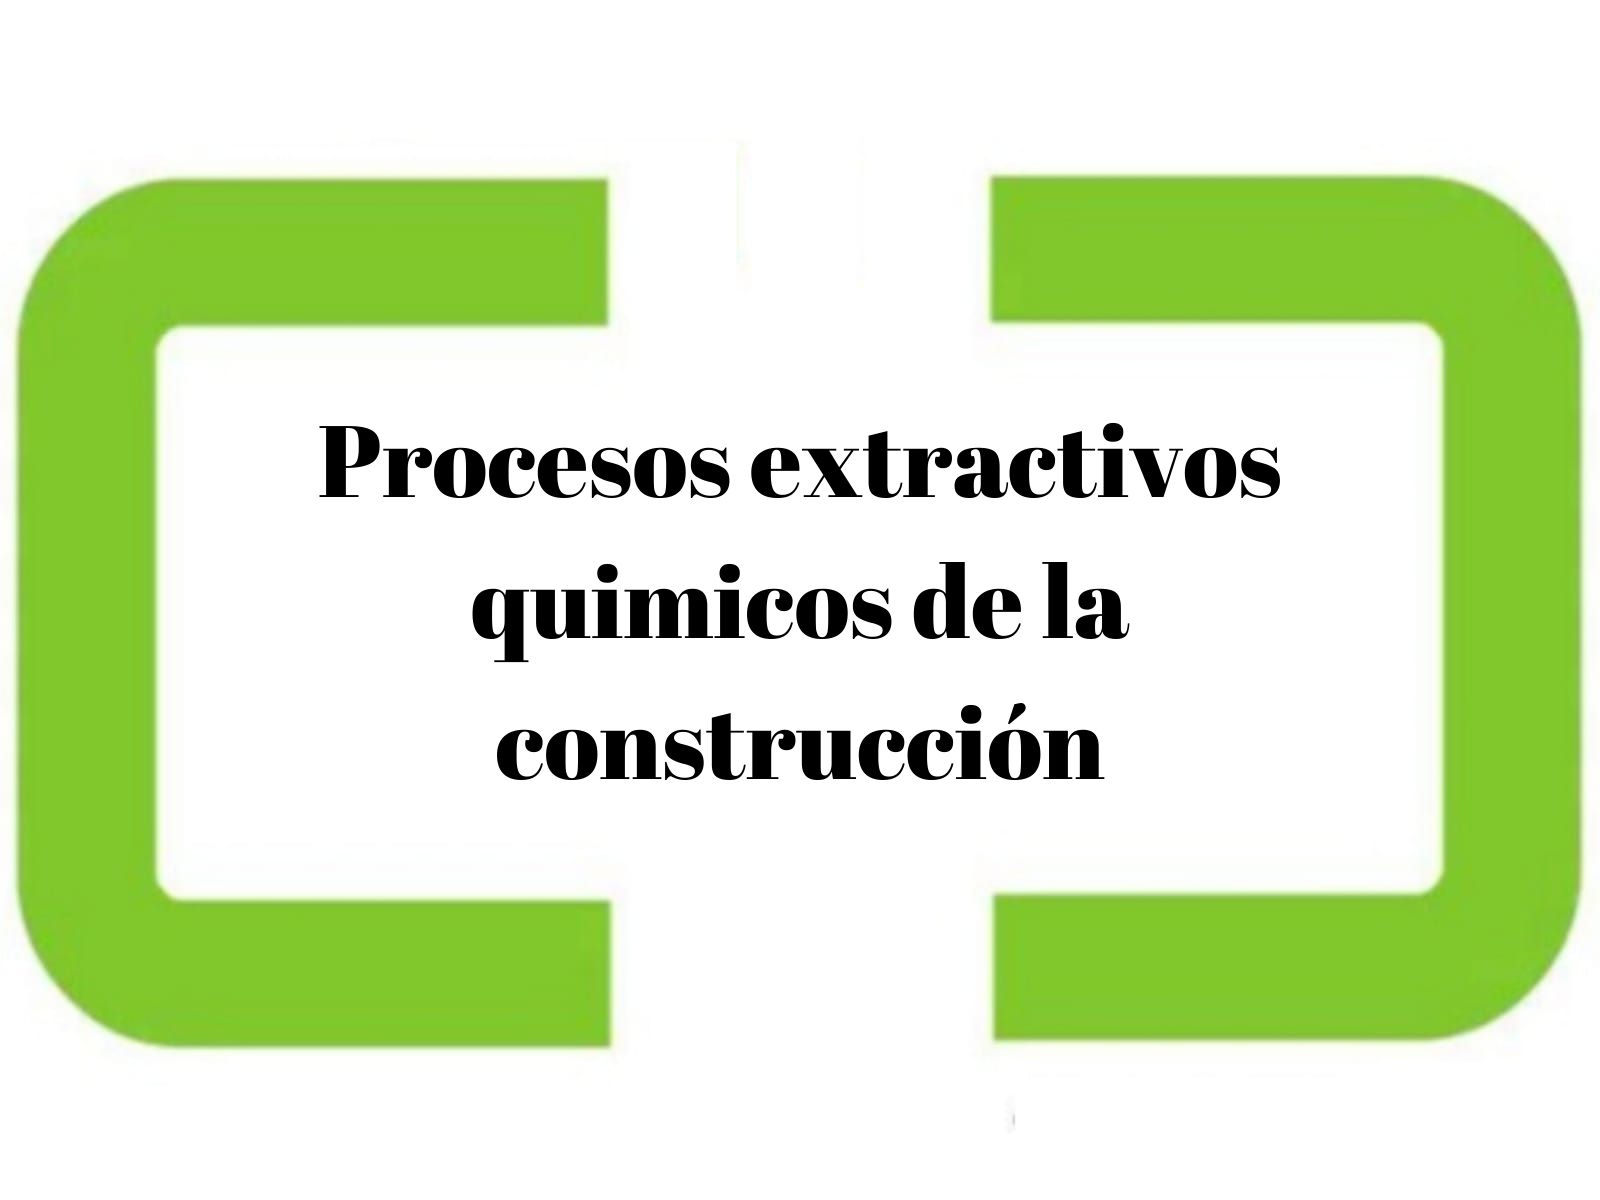 Procesos extractivos quimicos de la construcción